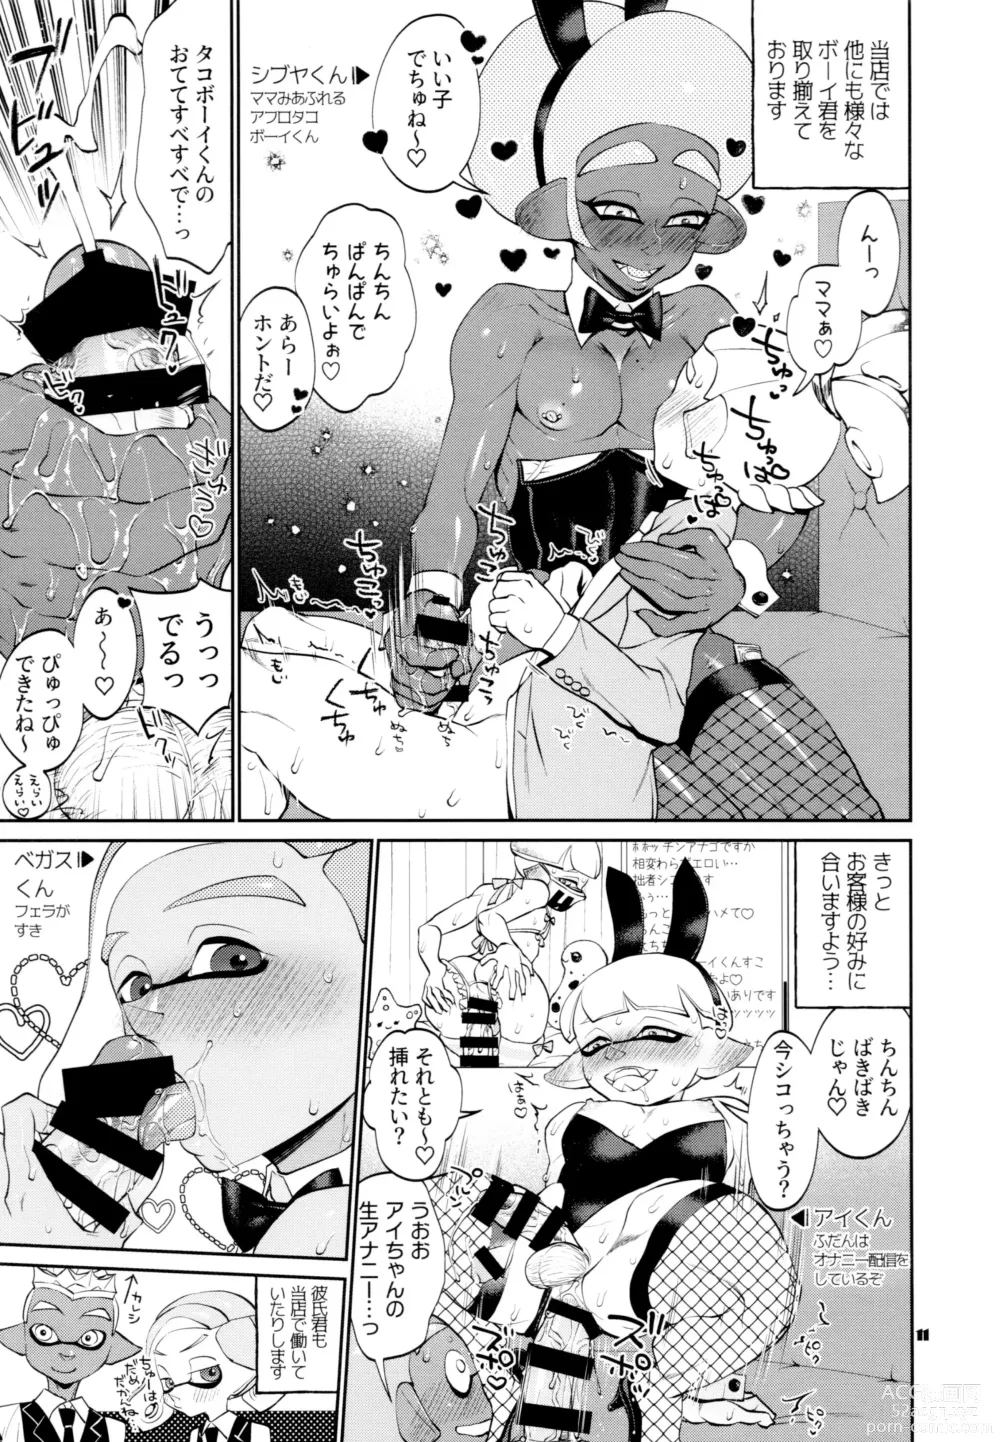 Page 11 of doujinshi Bunny no Ikagawashii Omise